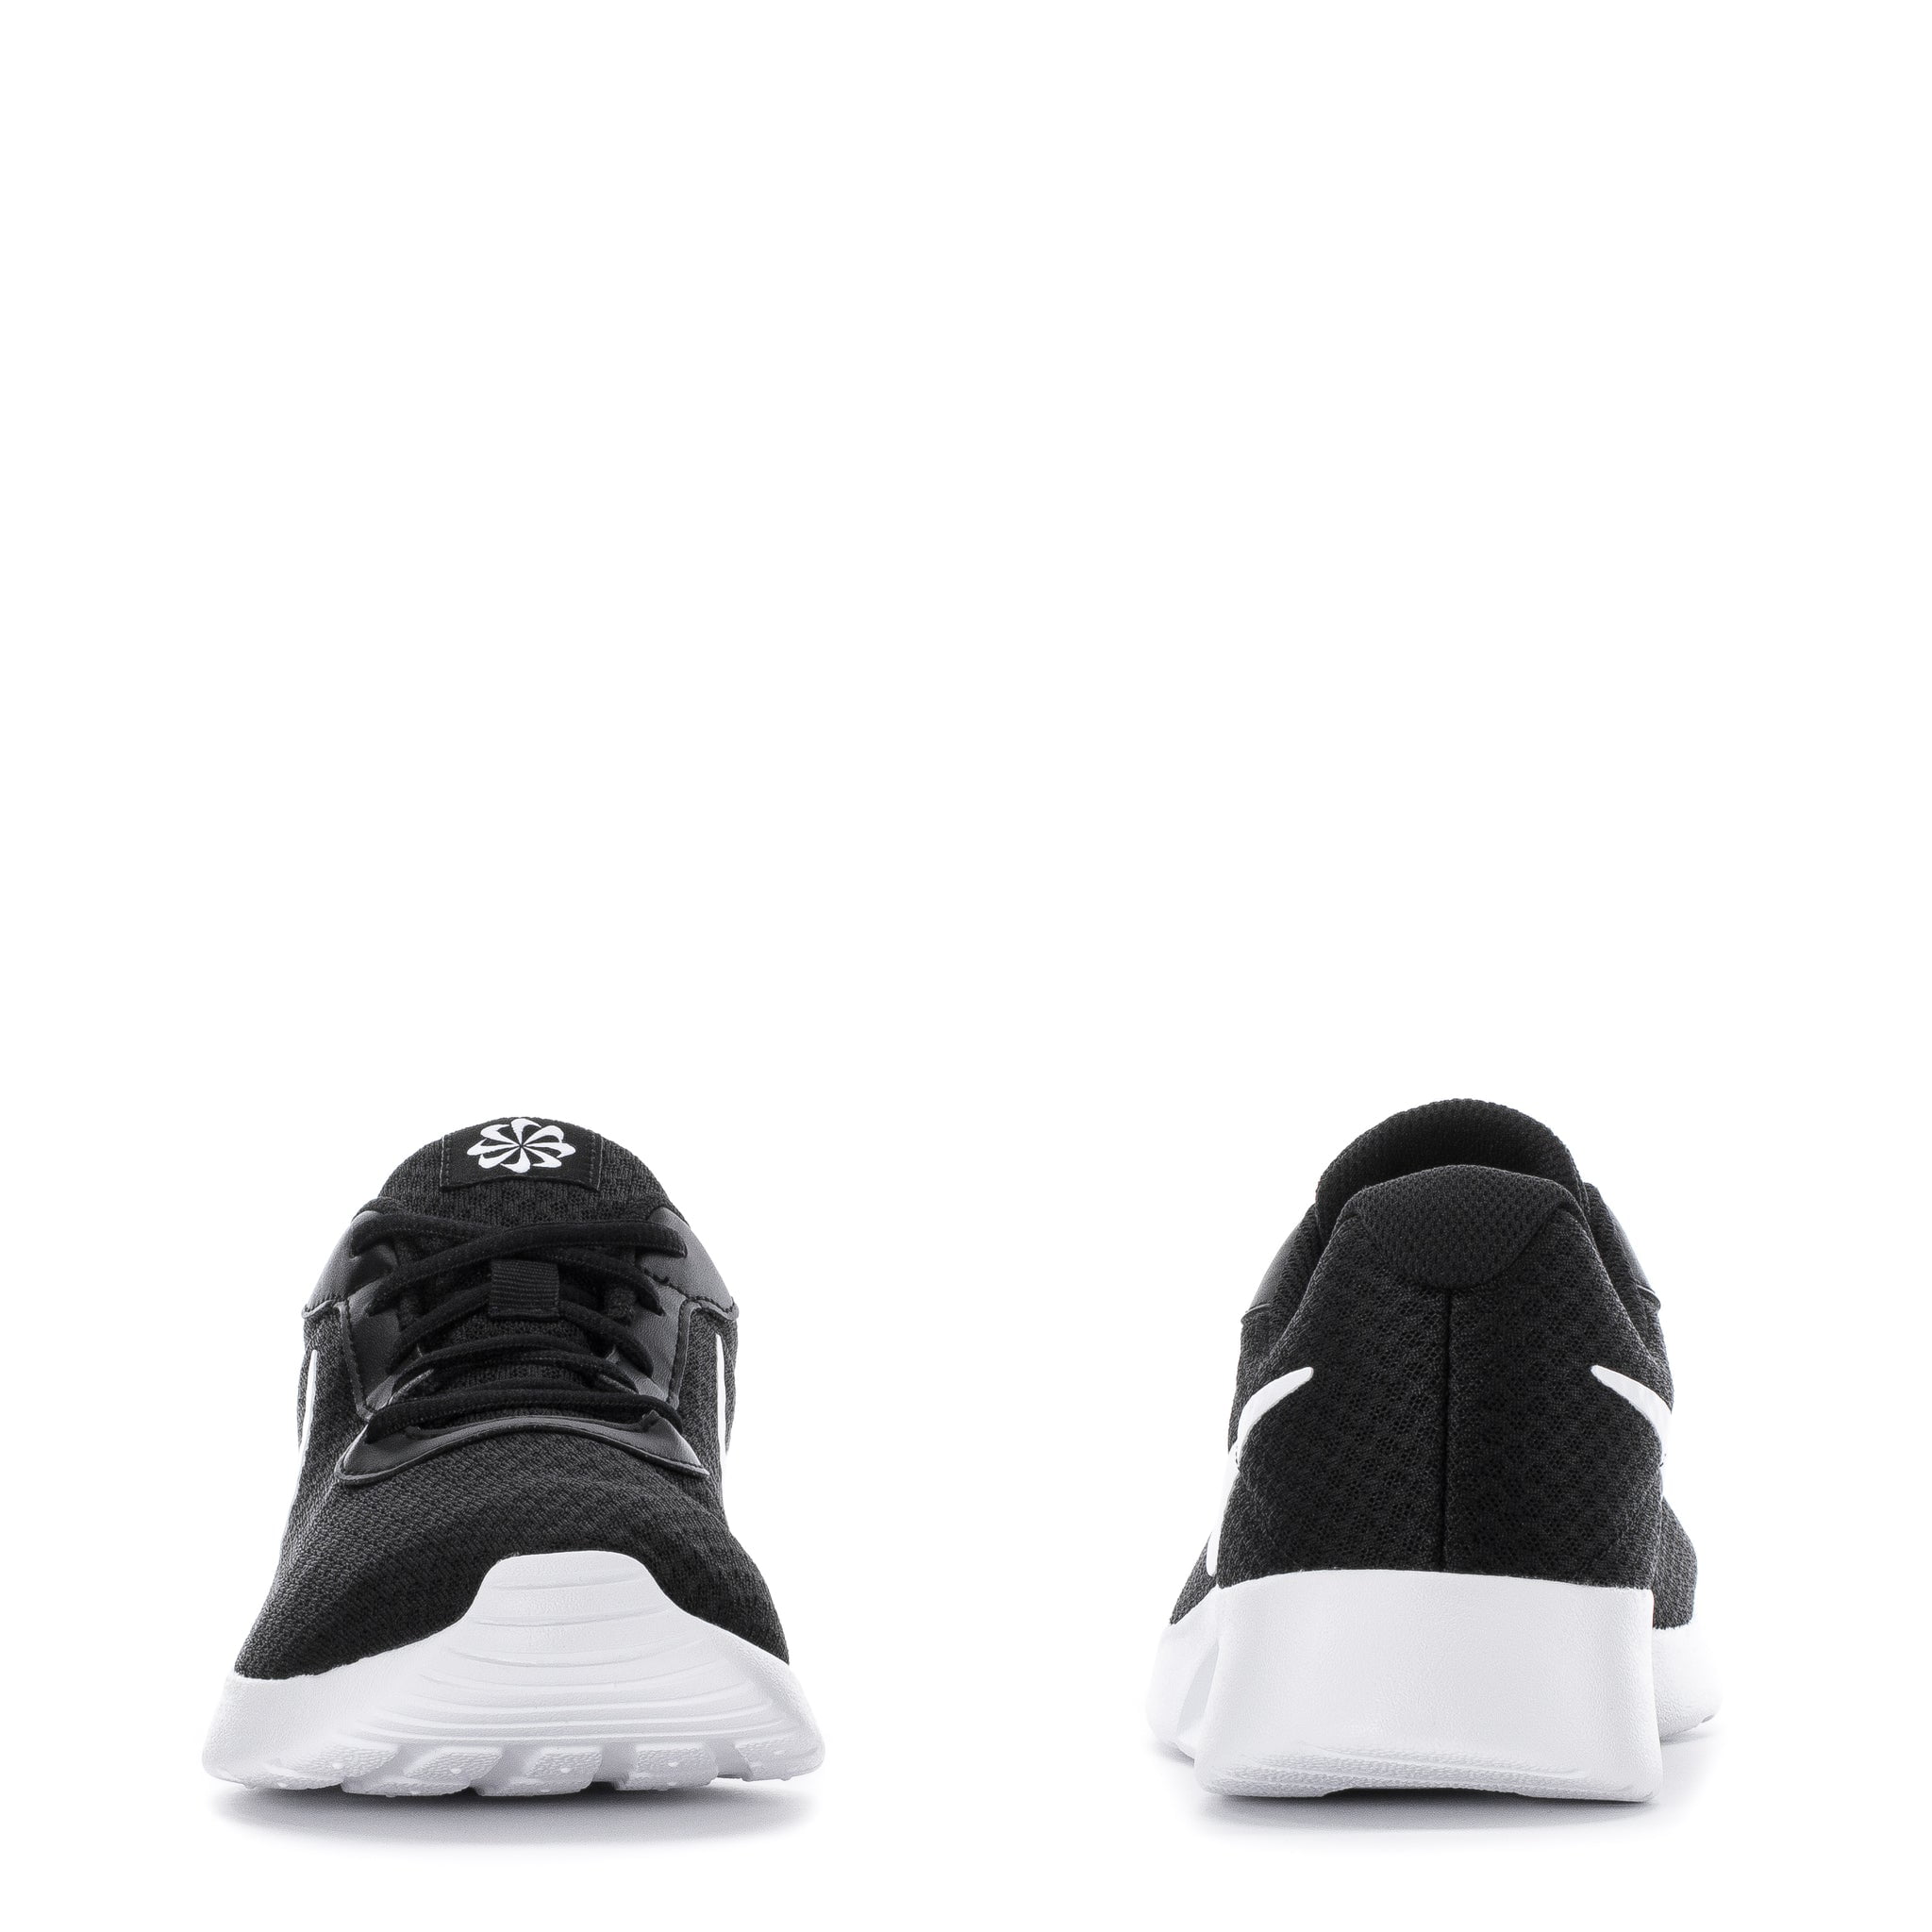 Men's Nike Tanjun Black/White-Barely Volt-Black (DJ6258 003) - 10